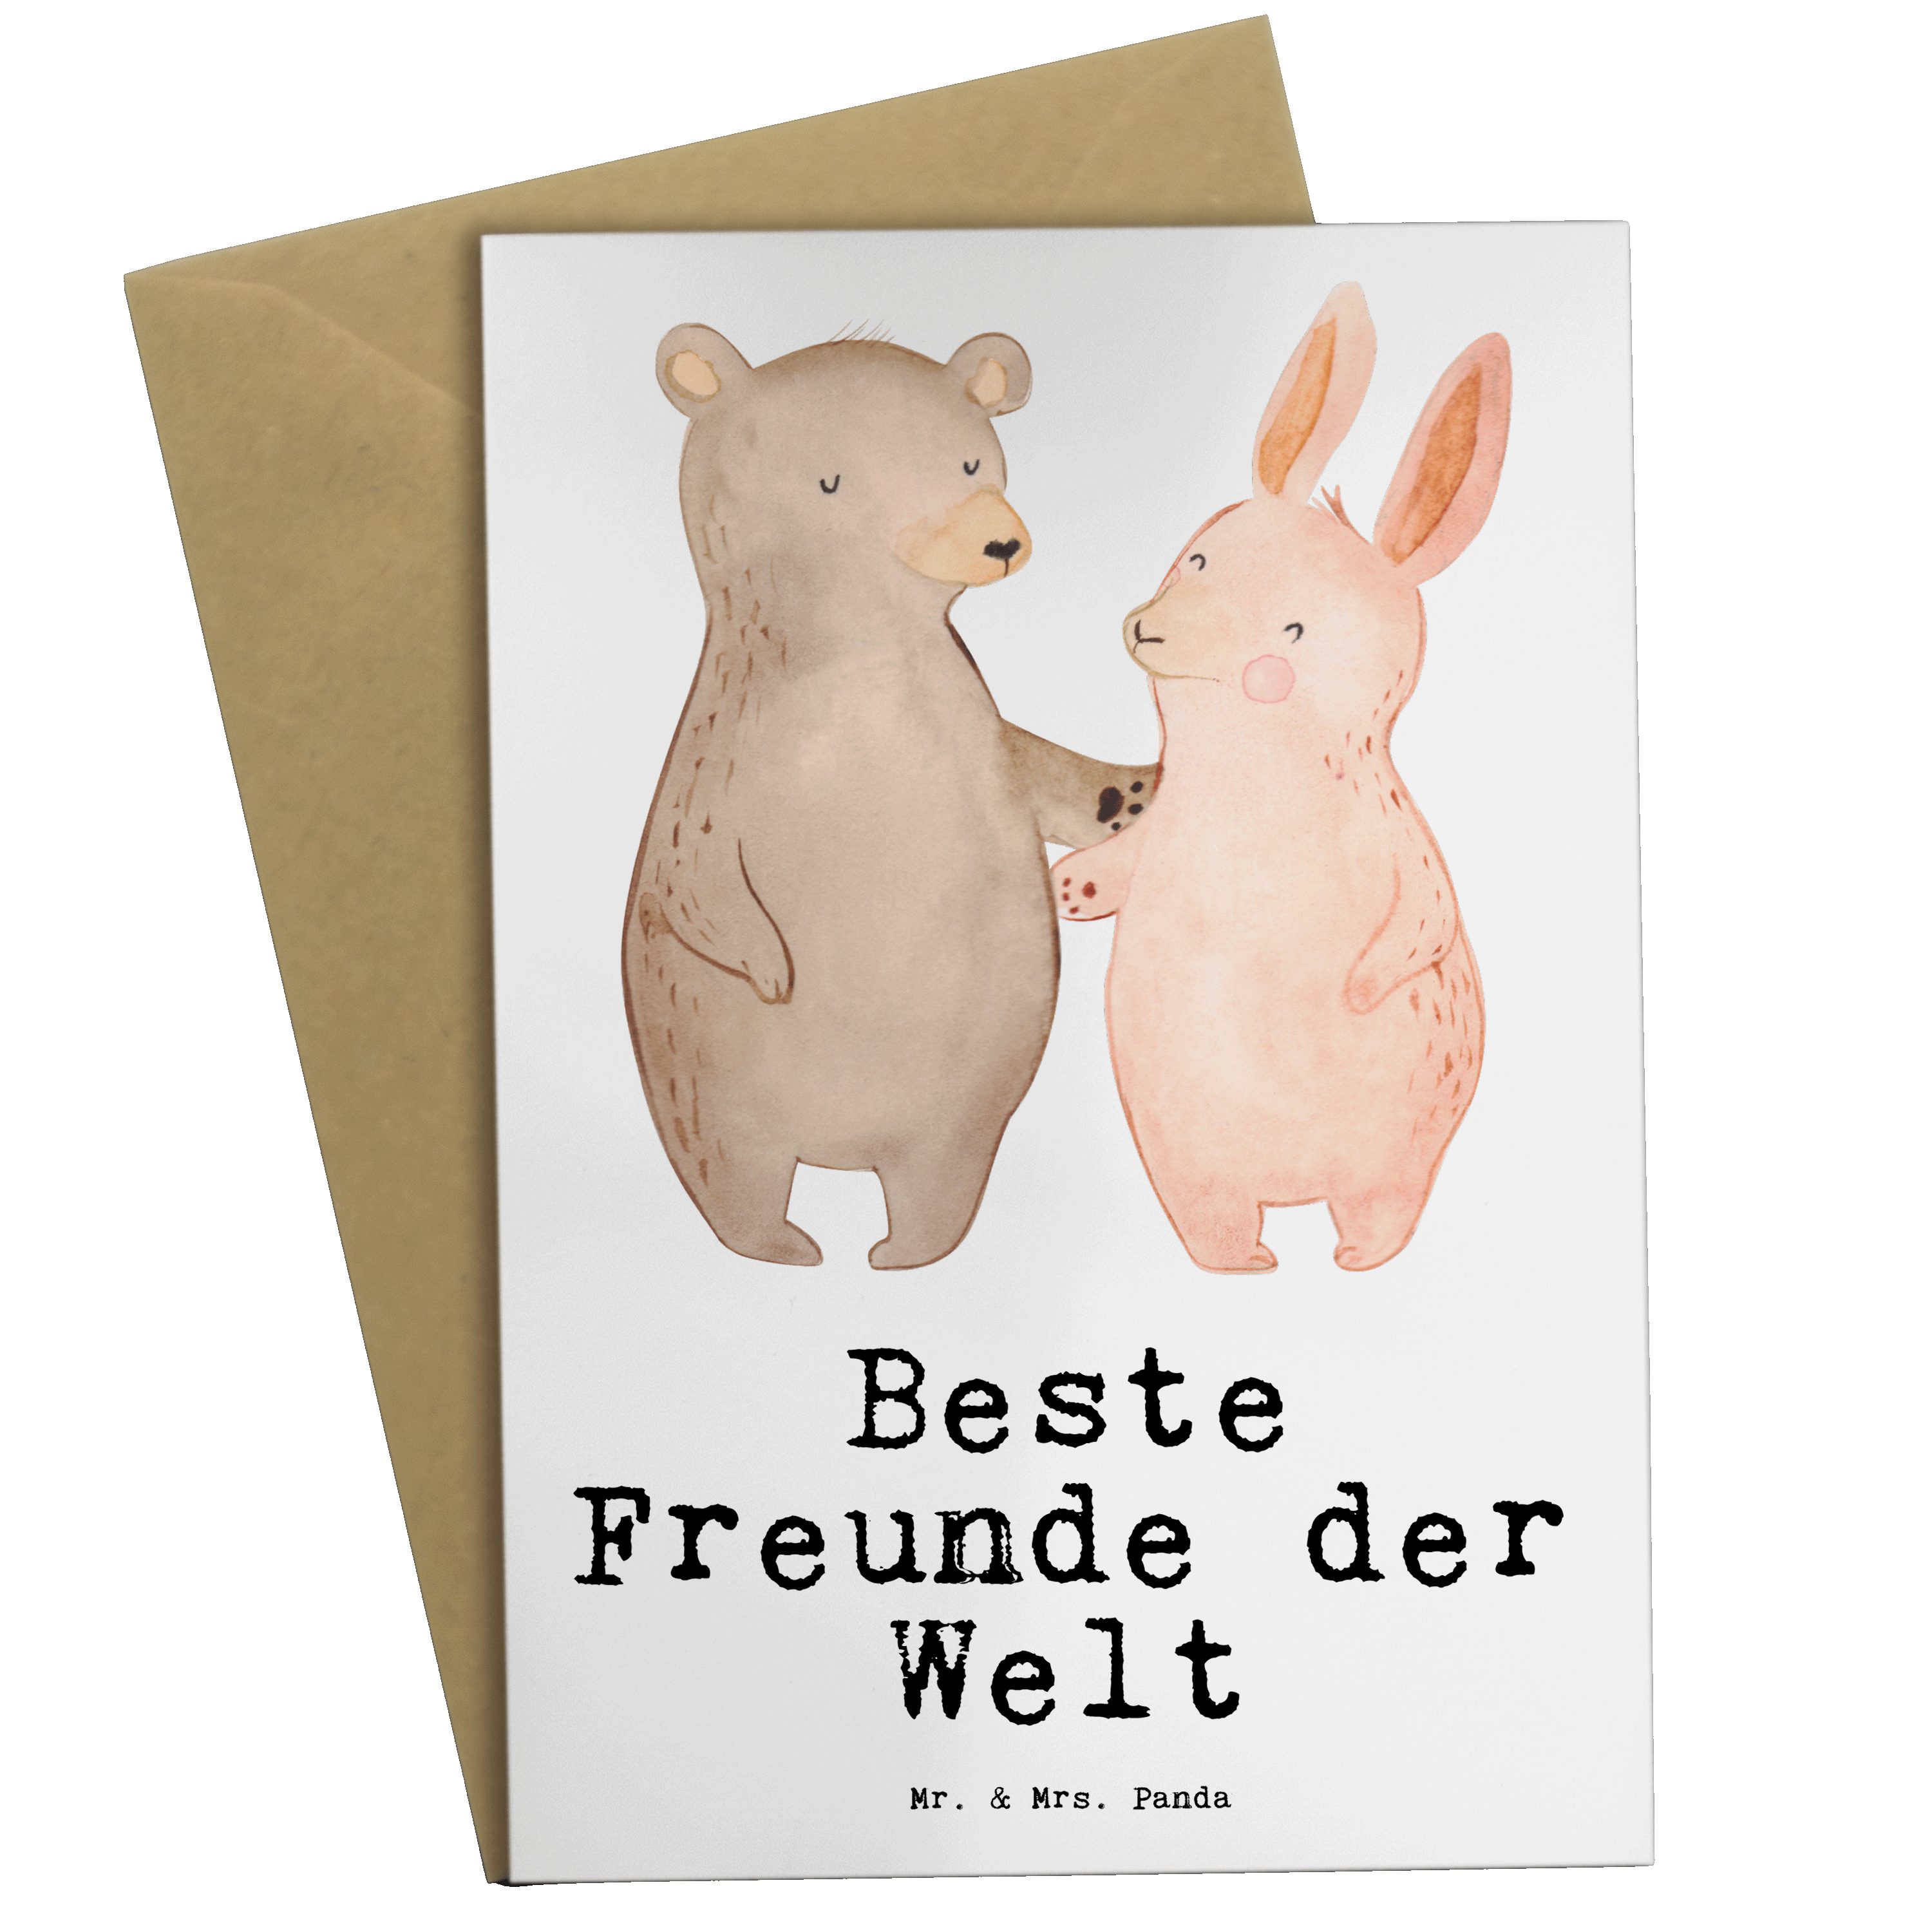 Mr. & Mrs. Panda Grußkarte Hase Beste Freunde der Welt - Weiß - Geschenk, Geschenkidee, Hochzeit